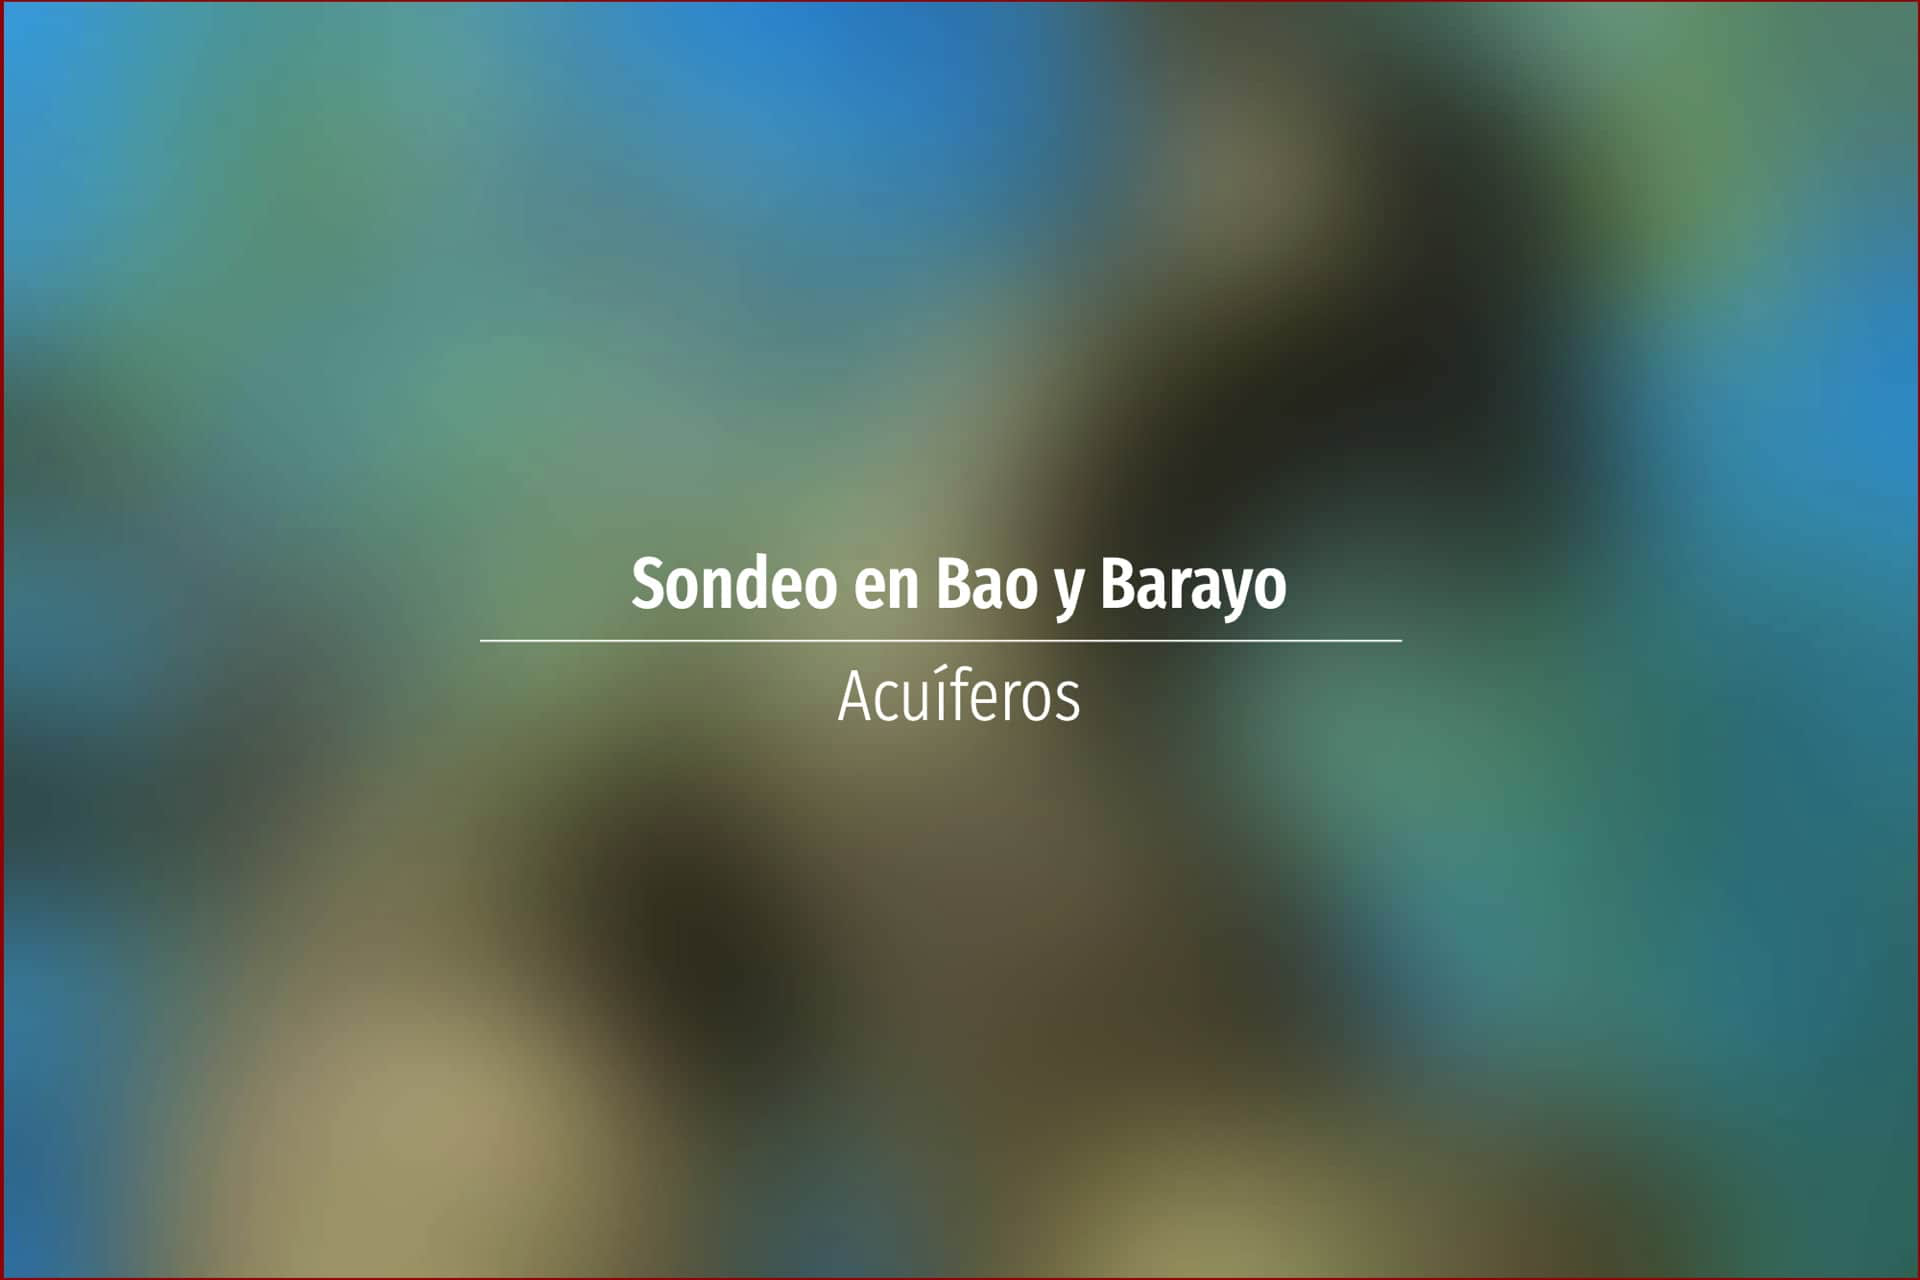 Sondeo en Bao y Barayo